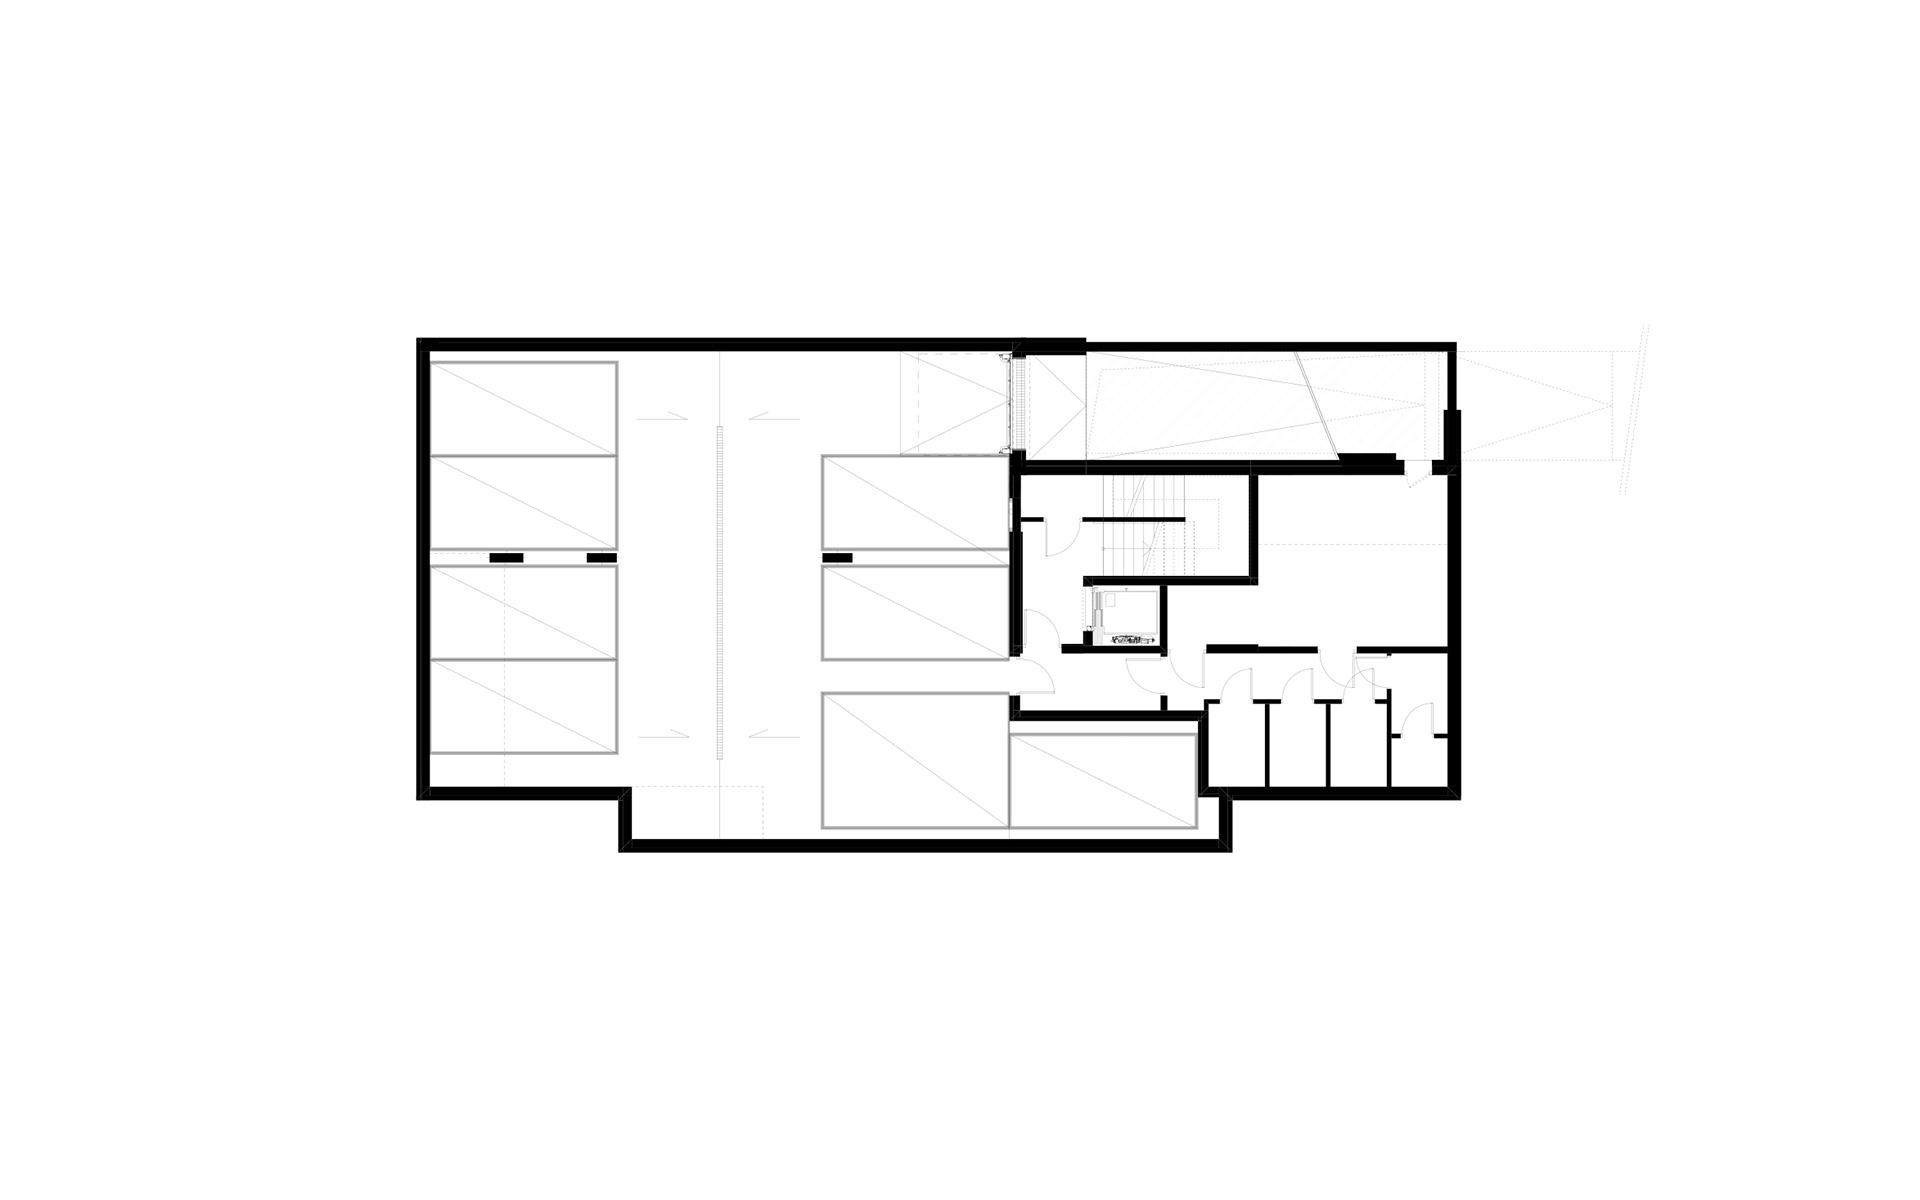 Czwarty obraz schematyczny projektu apartamentowca